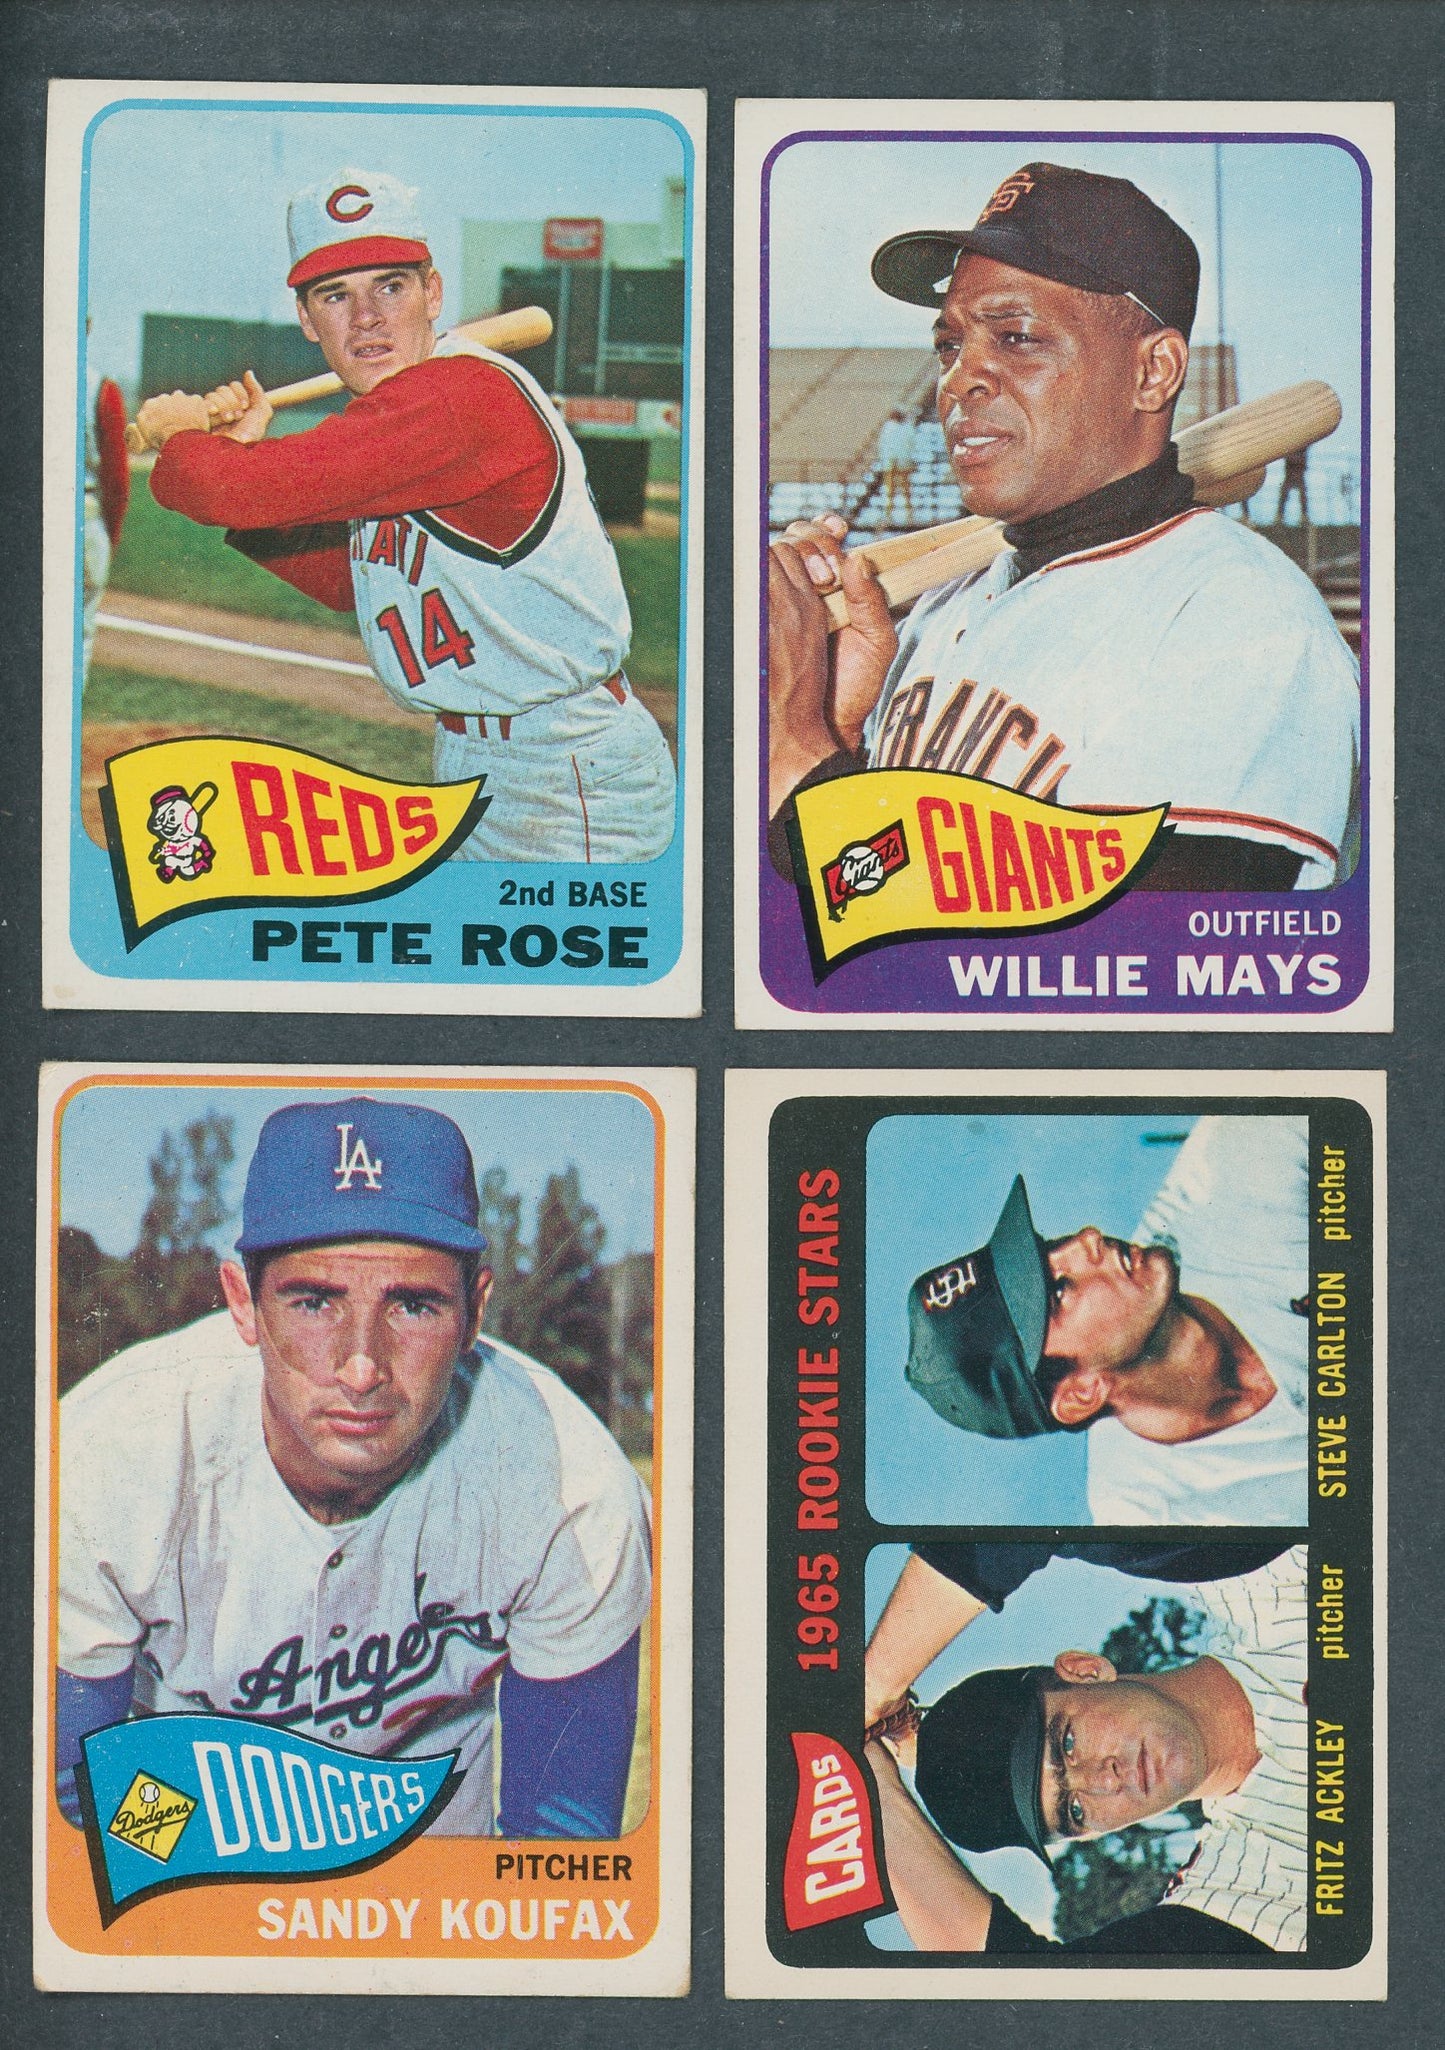 1965 Topps Baseball Near Set VG EX (597/598) (23-60)